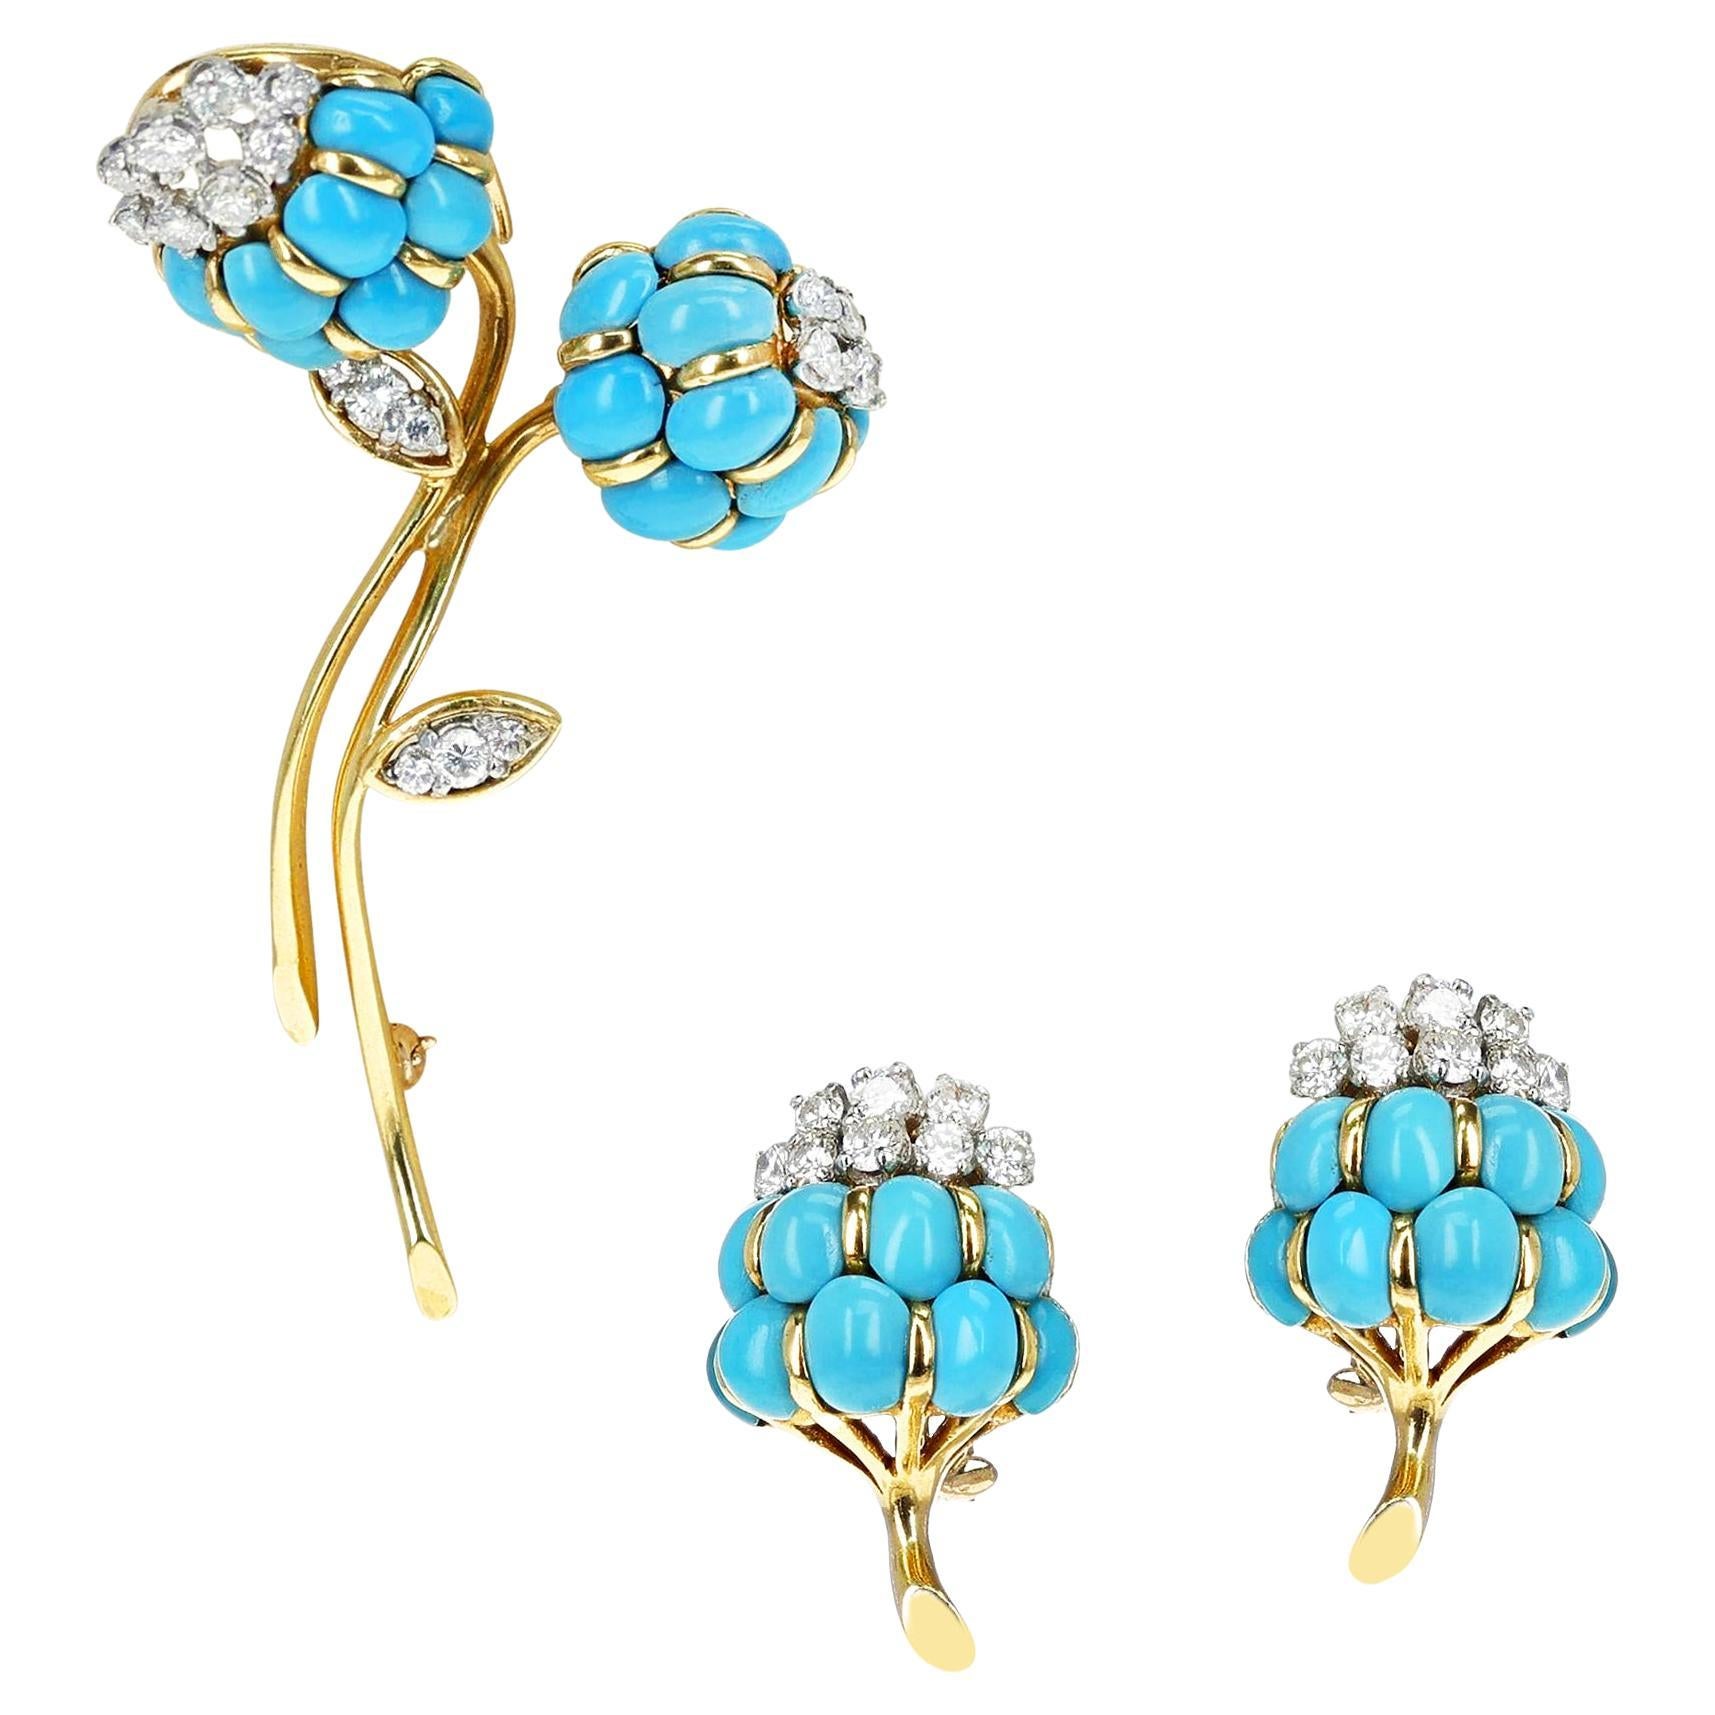 Van Cleef & Arpels Turquoise Cabochon & Diamond Flower Brooch & Earring Set, 18k